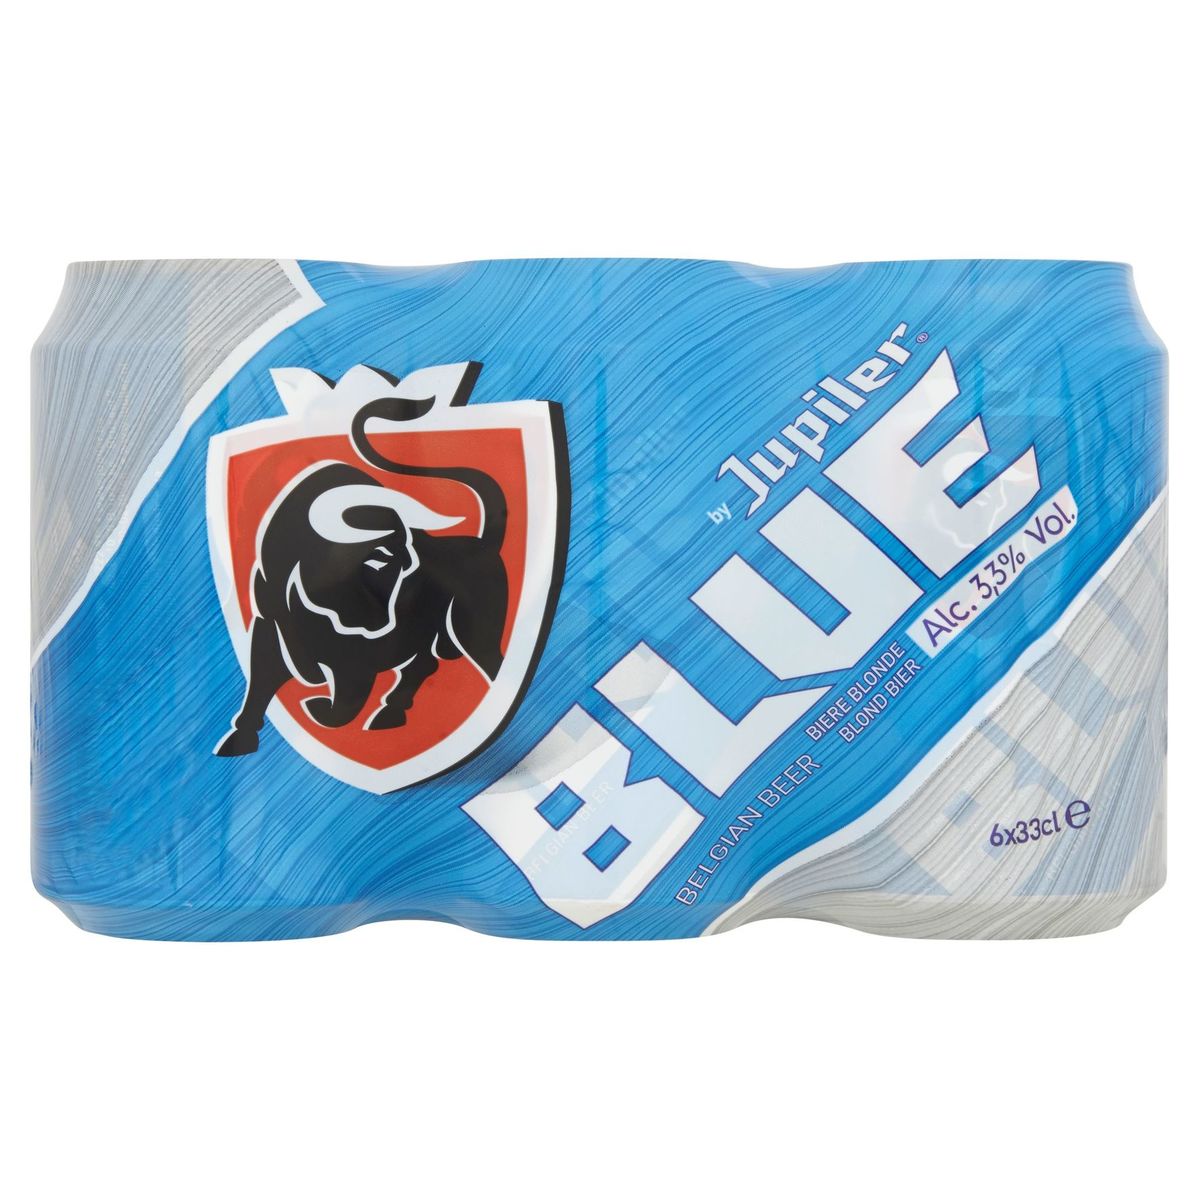 Jupiler Blue Bière Blonde Canettes 6 x 33 cl